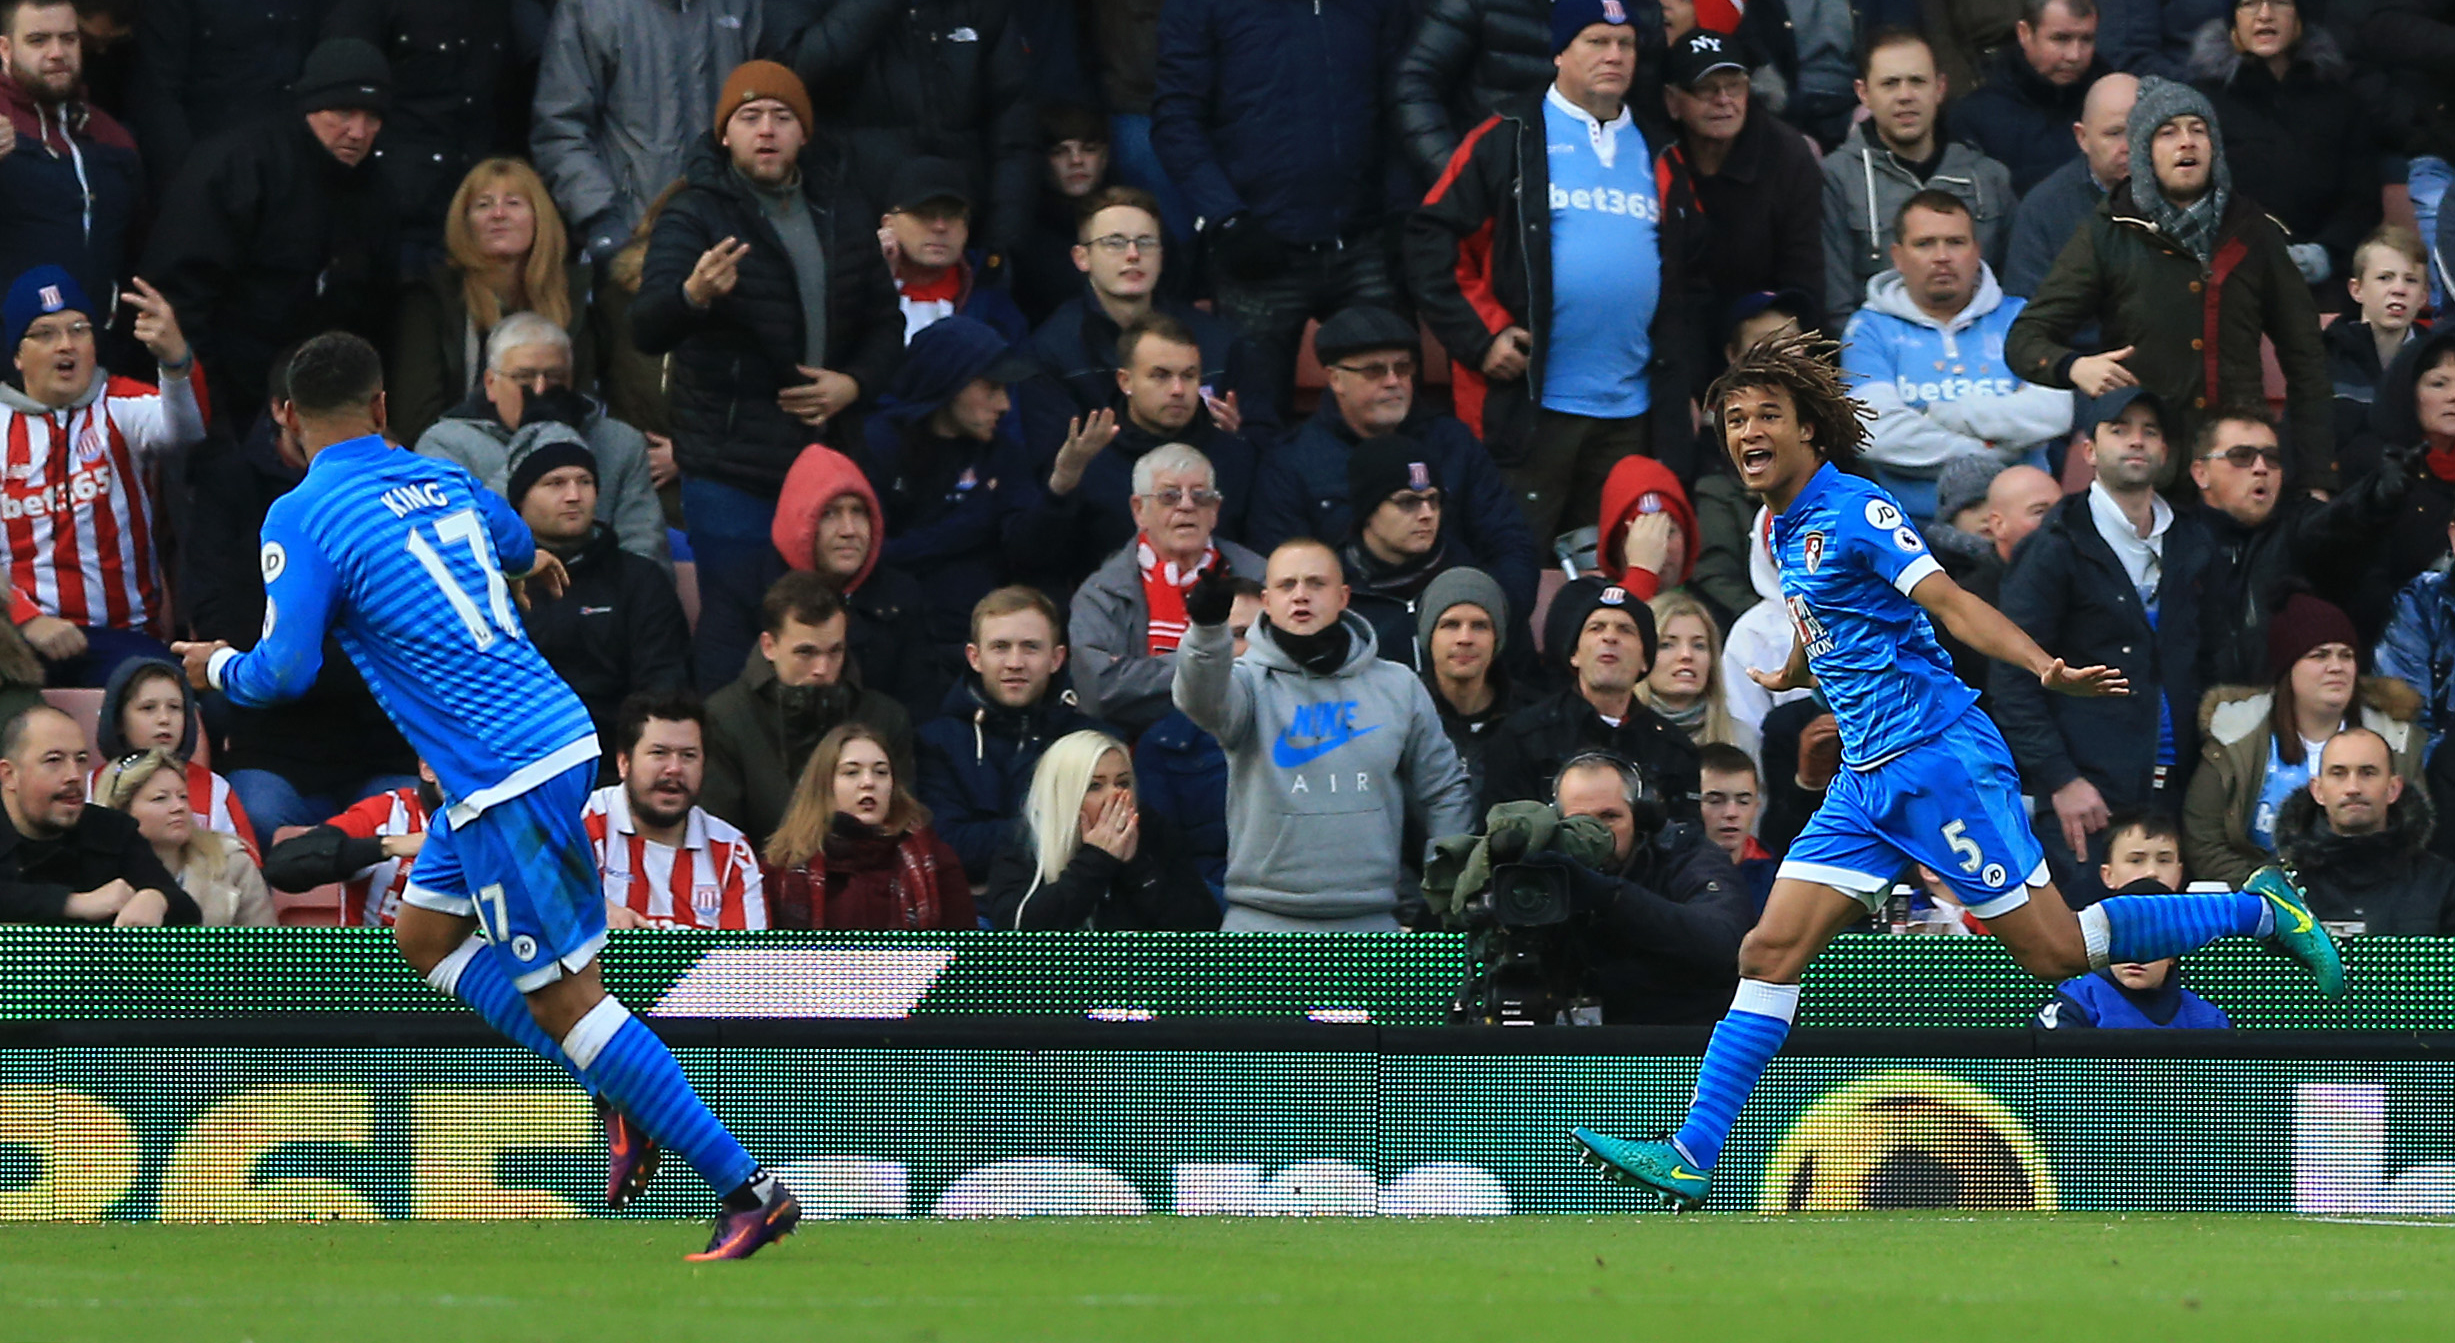 Nathan Aké bezorgde Bournemouth eerder dit seizoen een zege op bezoek bij Stoke City (0-1).